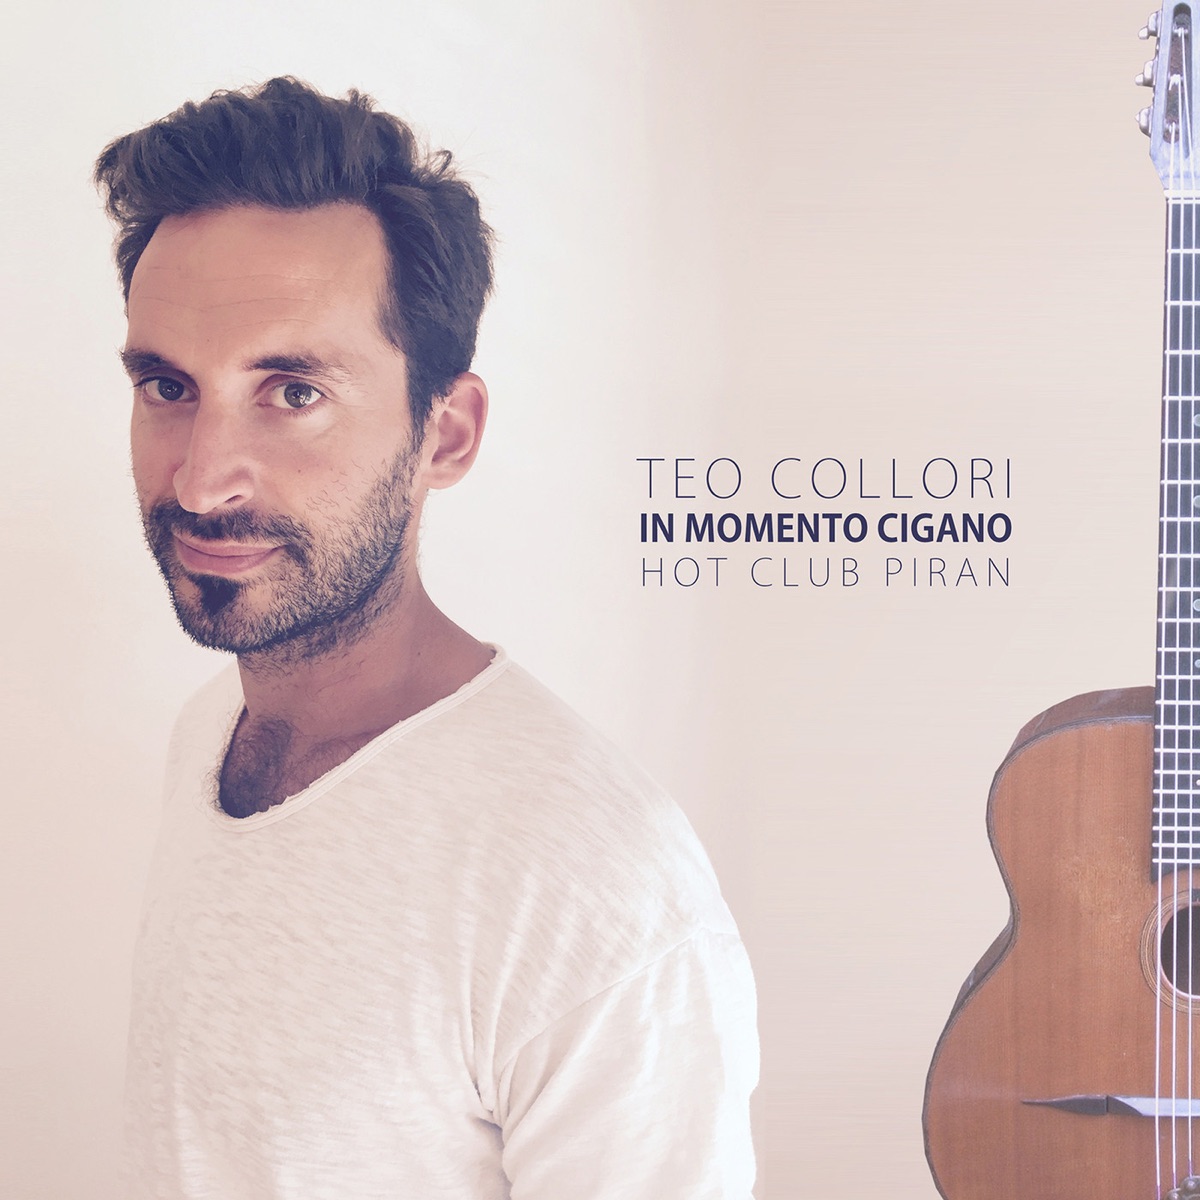 Hot Club Piran by Teo Collori & Momento Cigano on Apple Music